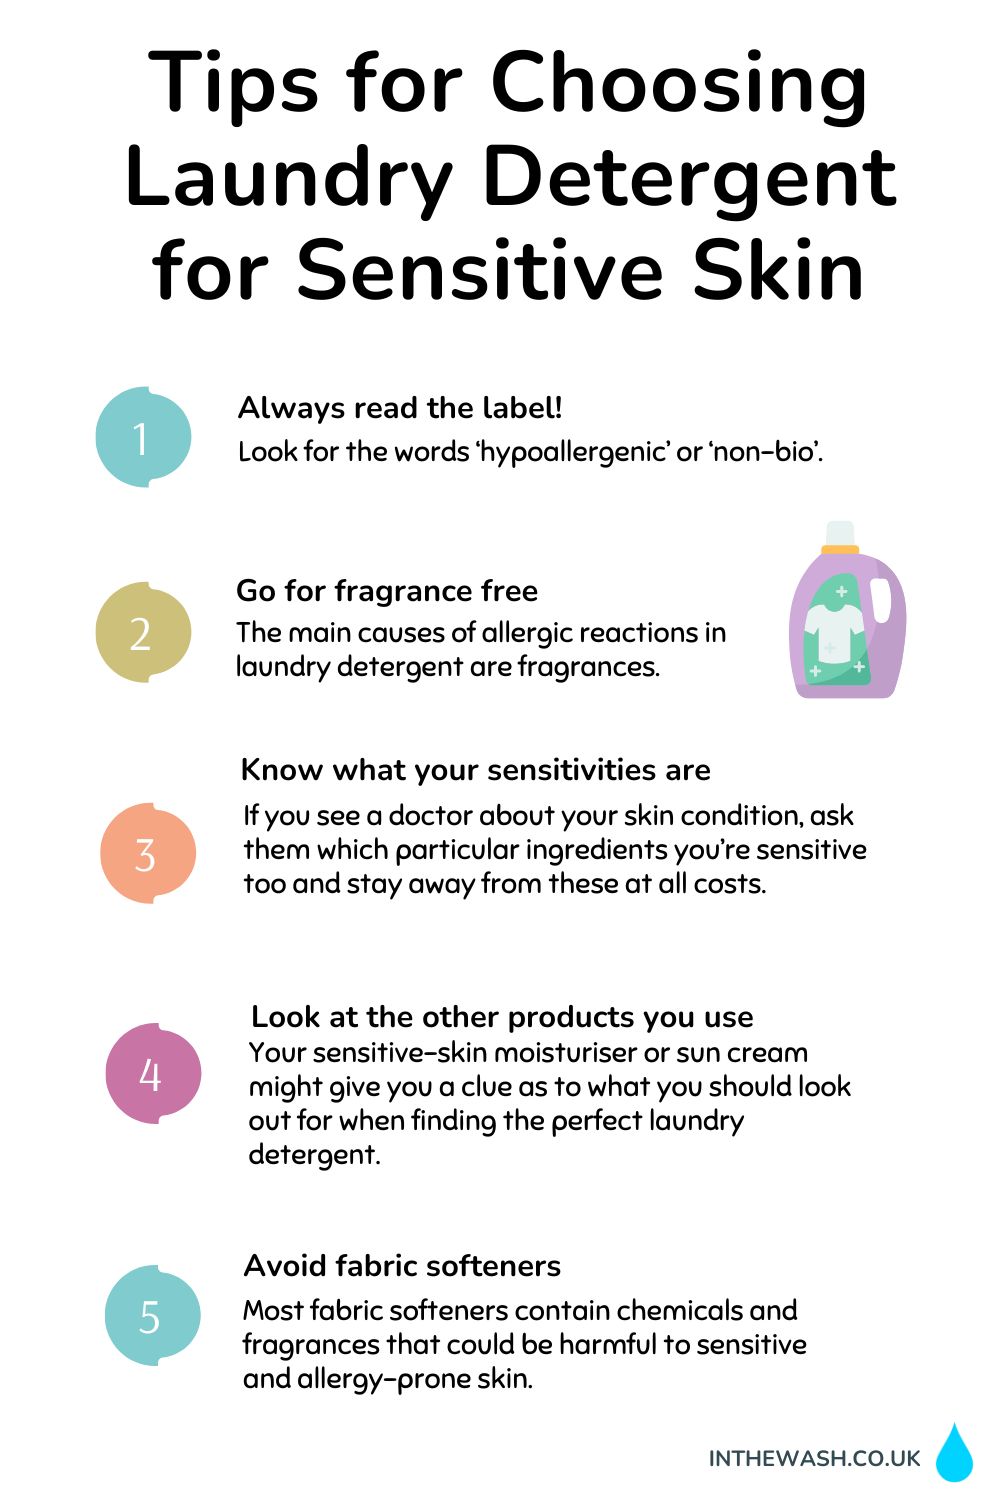 Tips for choosing laundry detergent for sensitive skin